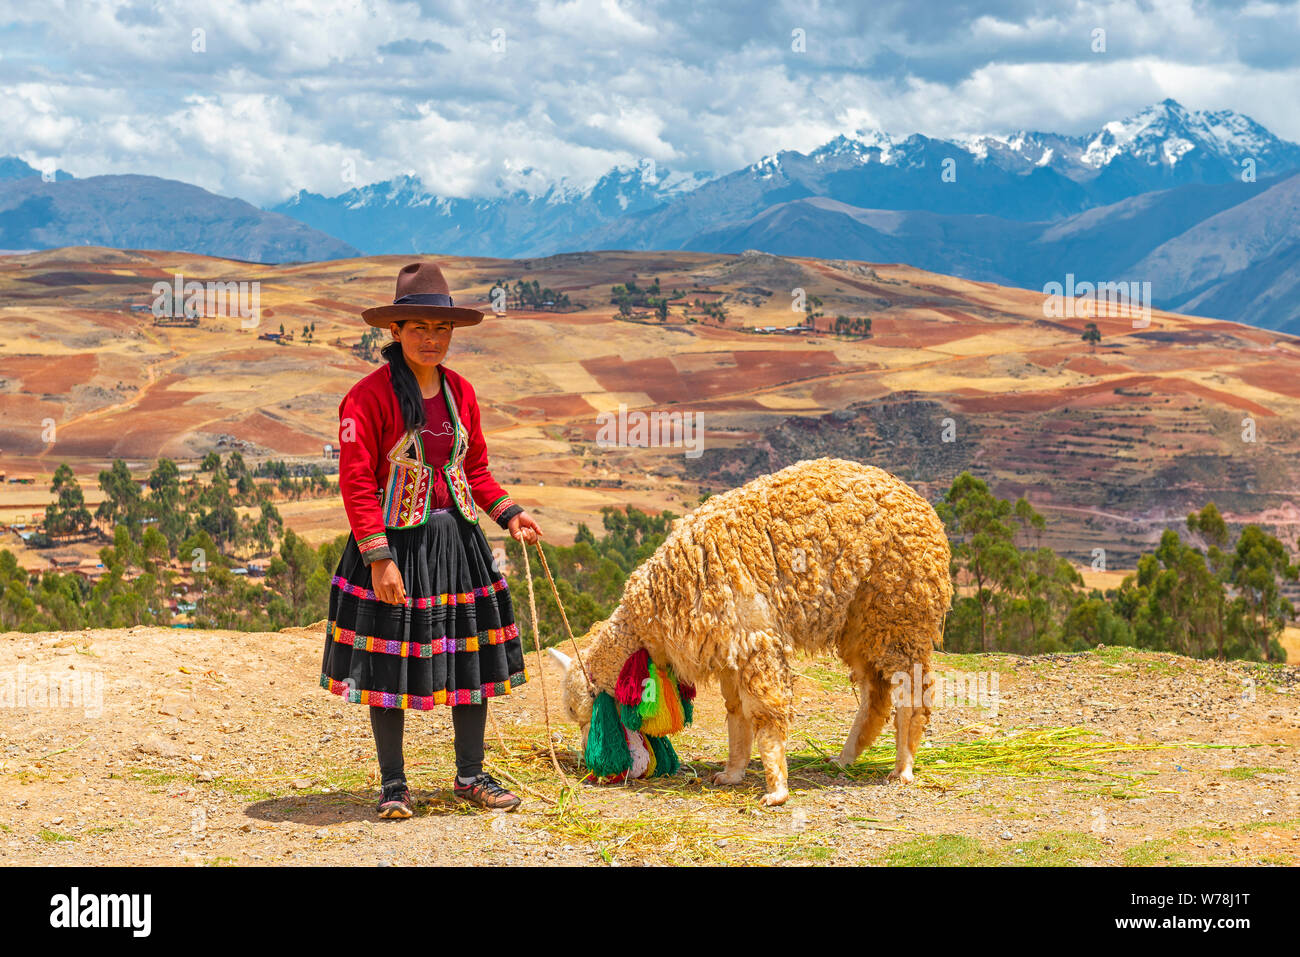 Les femme Quechua avec un lama de manger de la paille et la vallée sacrée des incas dans le fond près de Cusco, Pérou. Banque D'Images